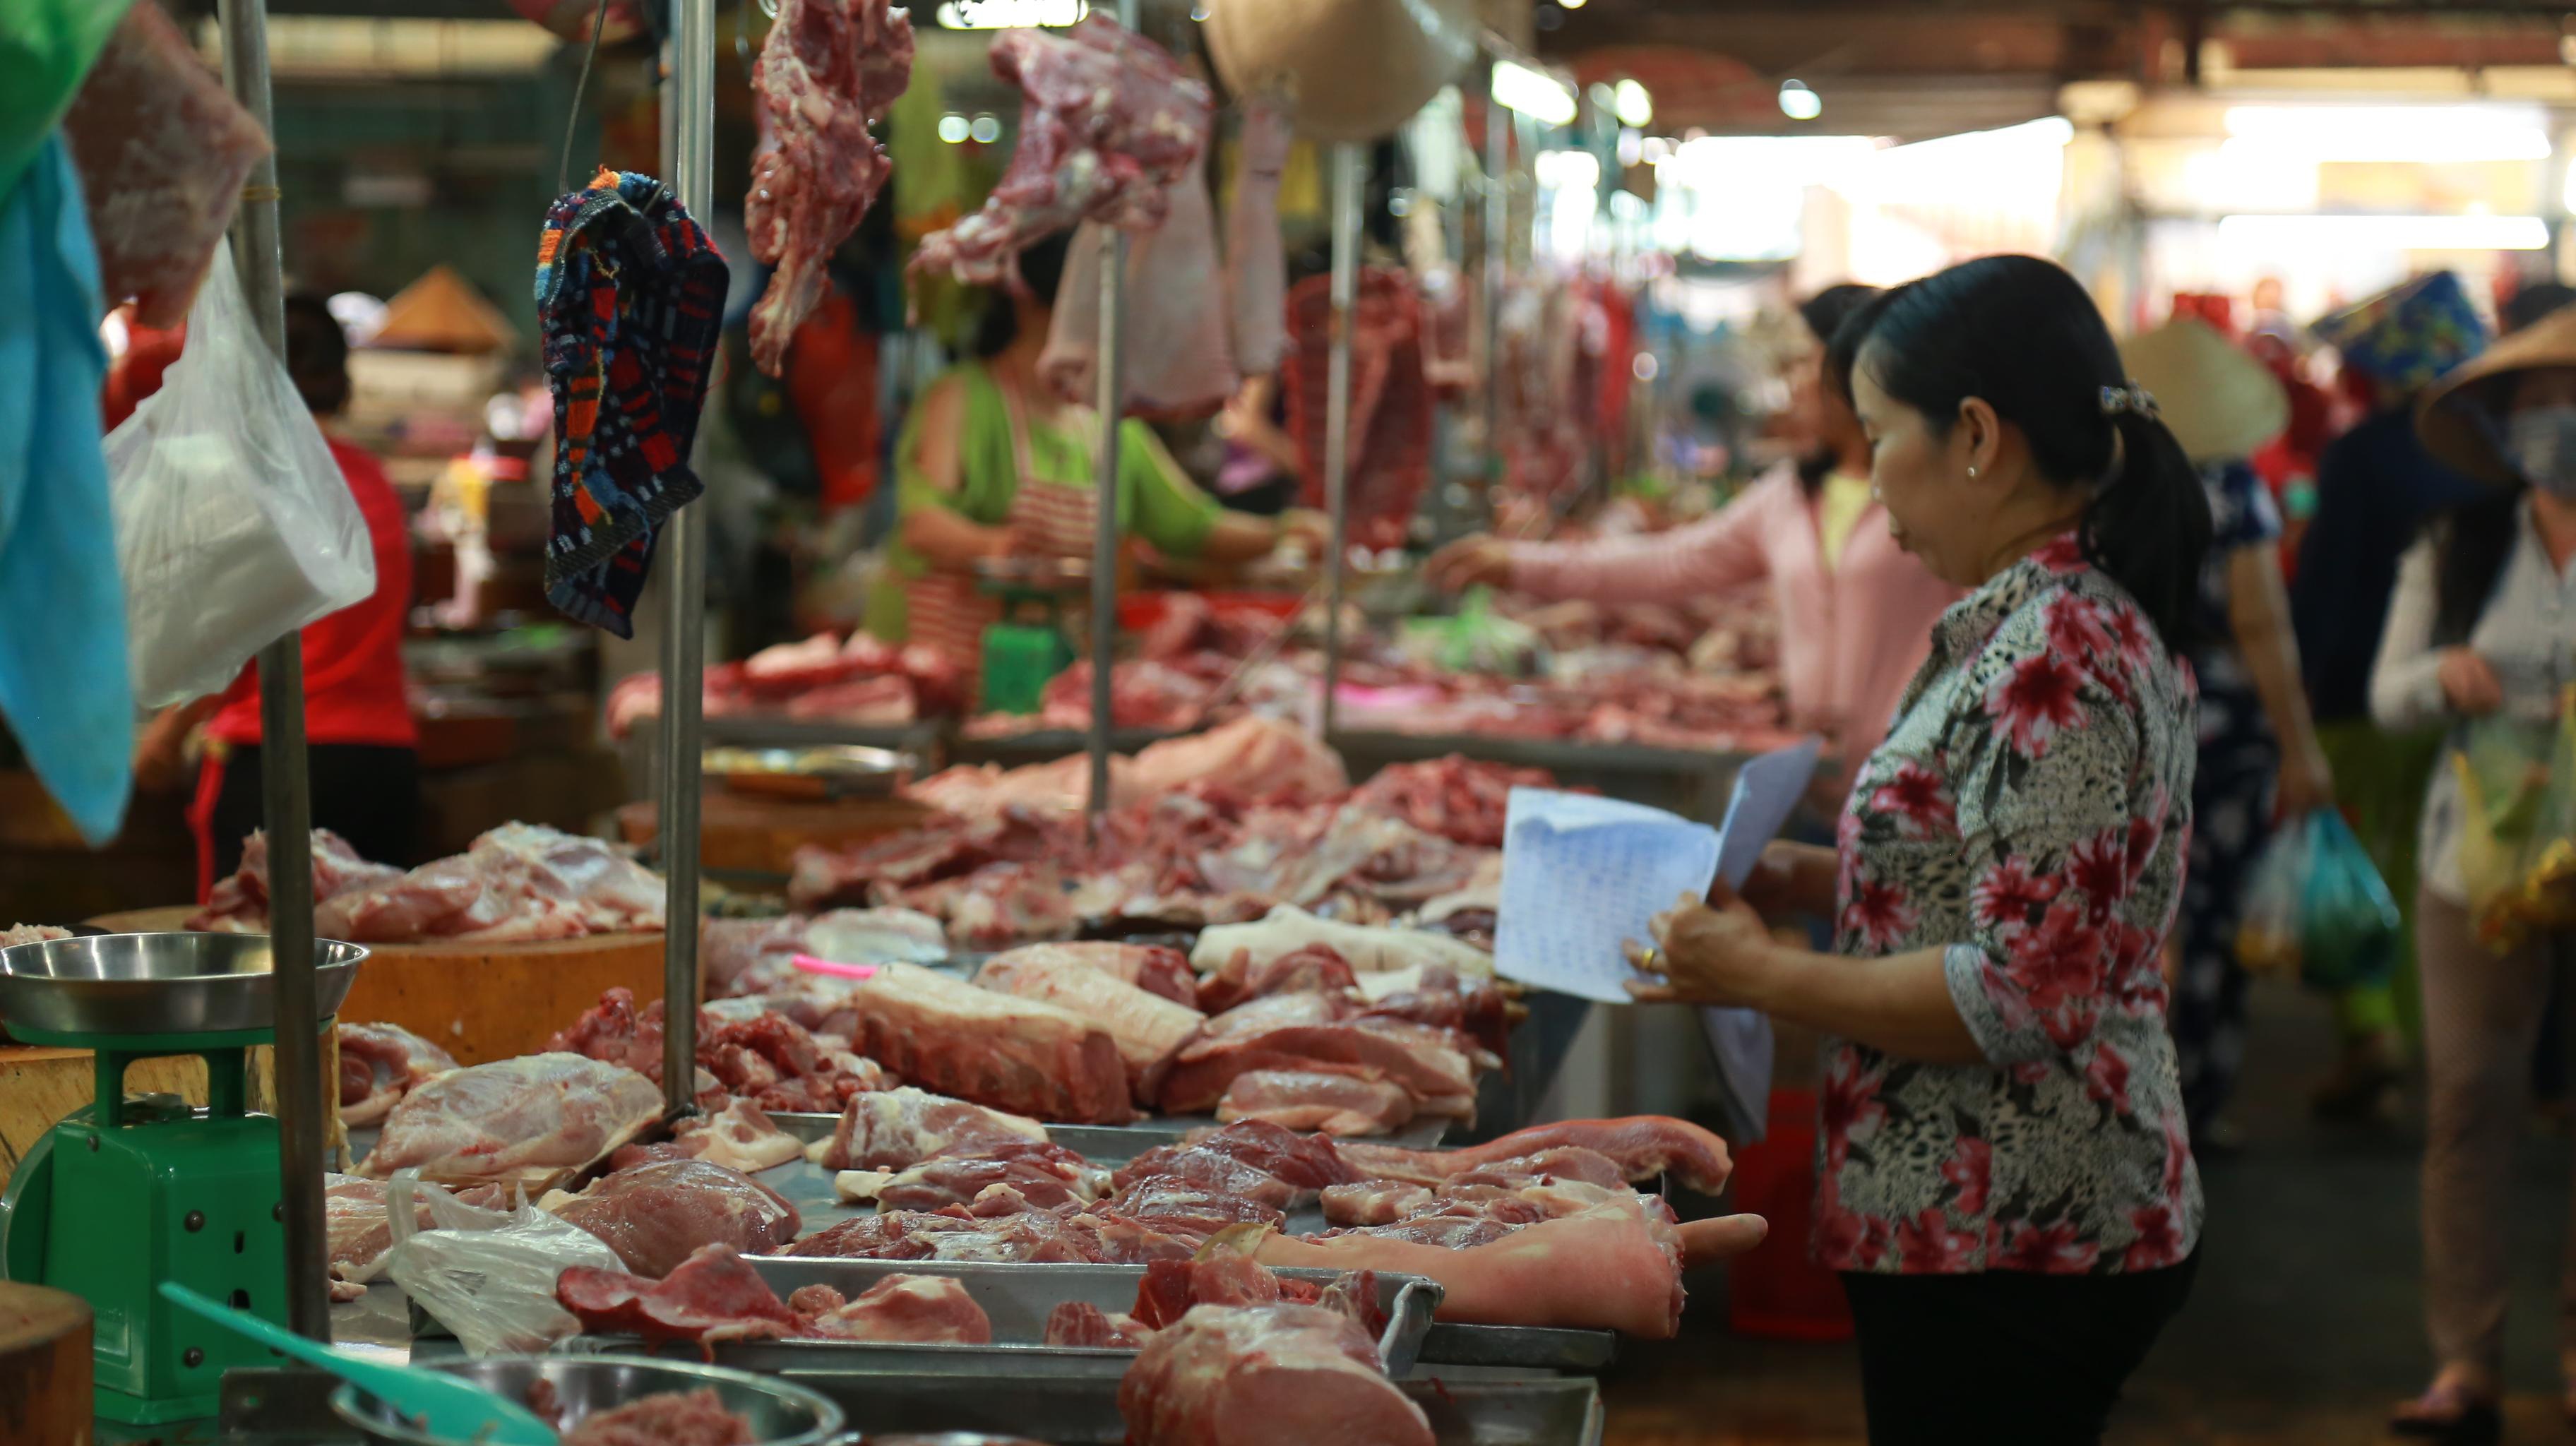 giá thịt lợn